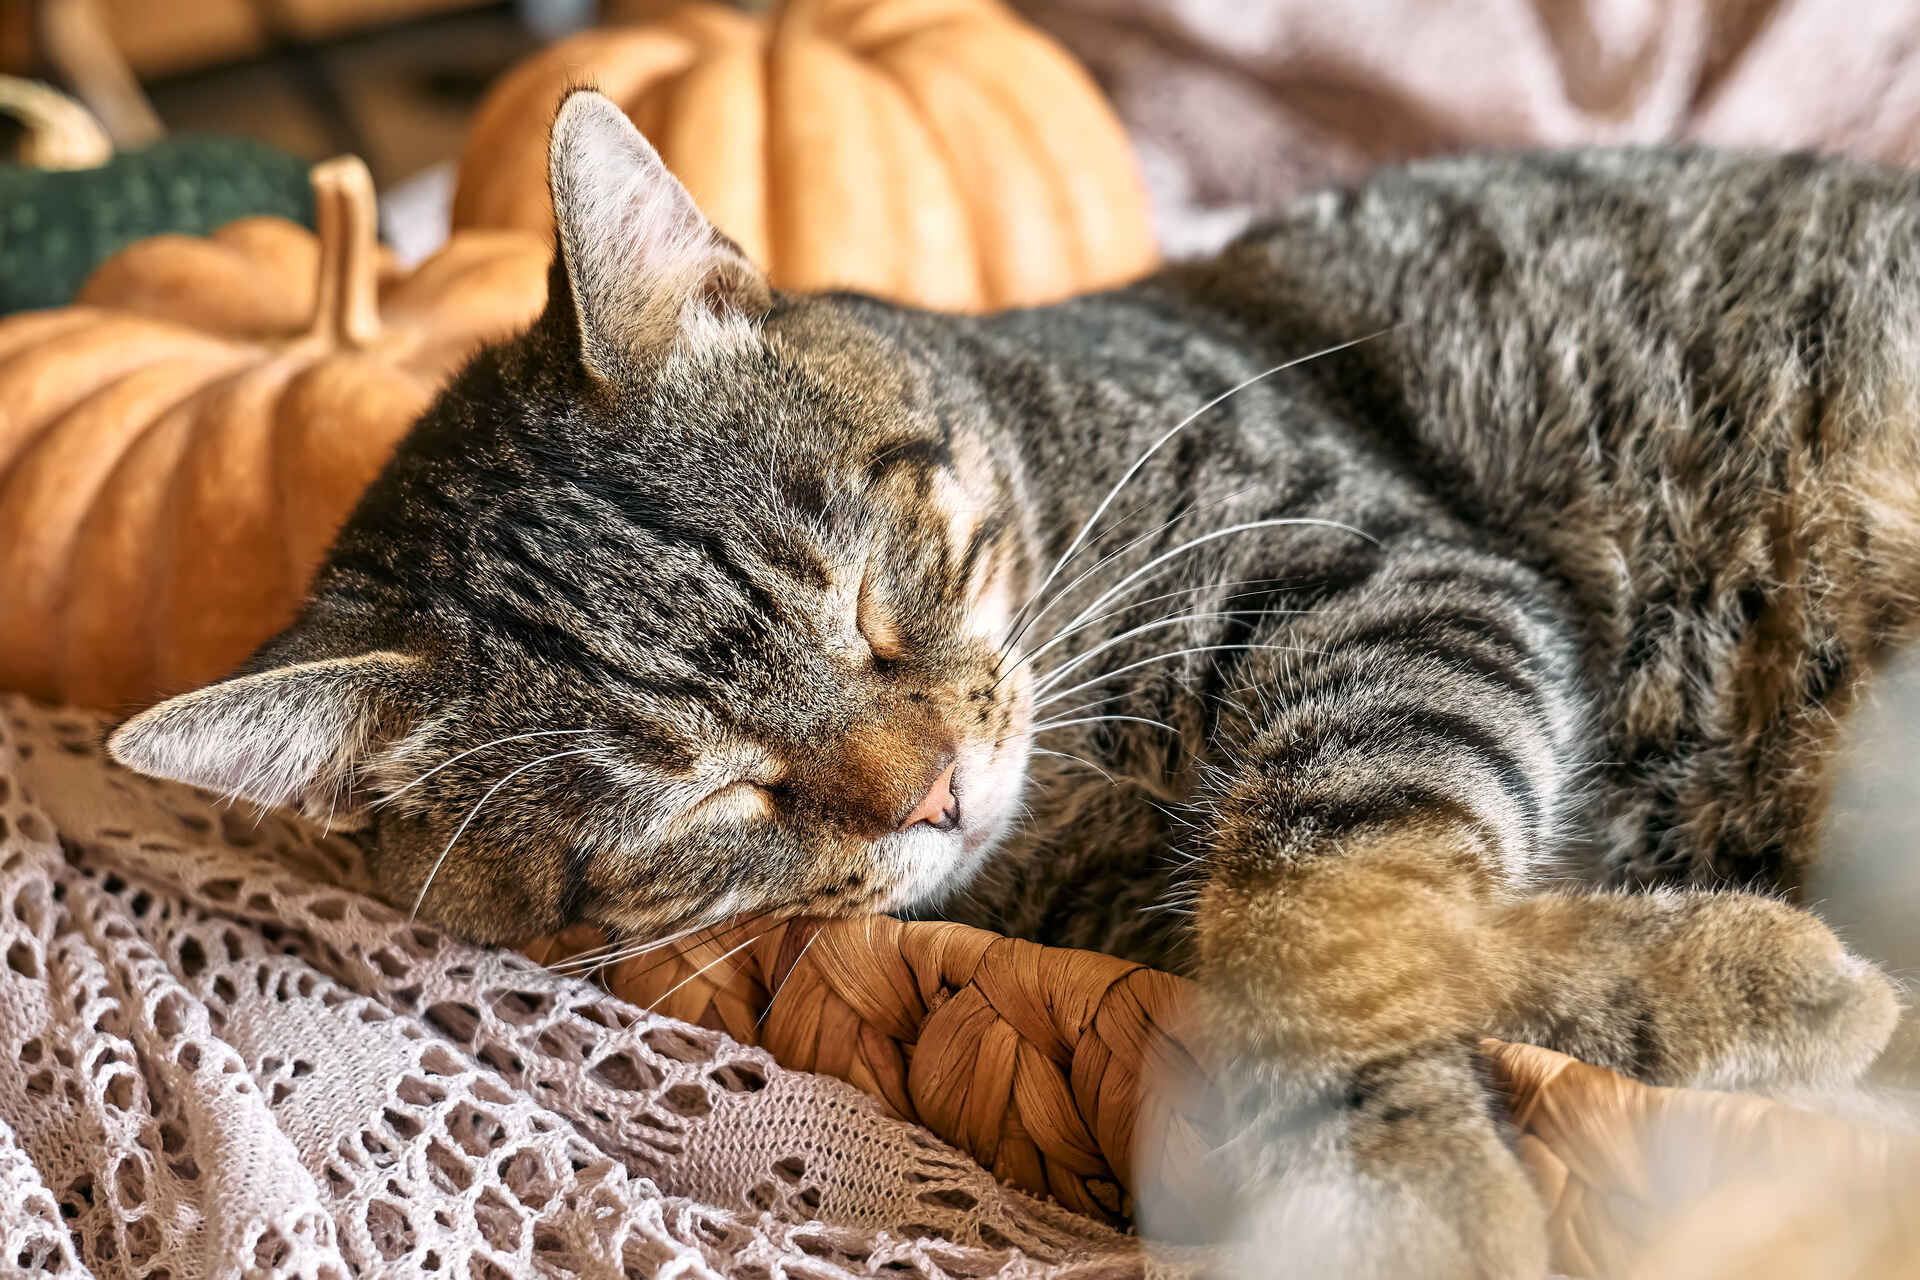 A cat sleeping in a wicker basket